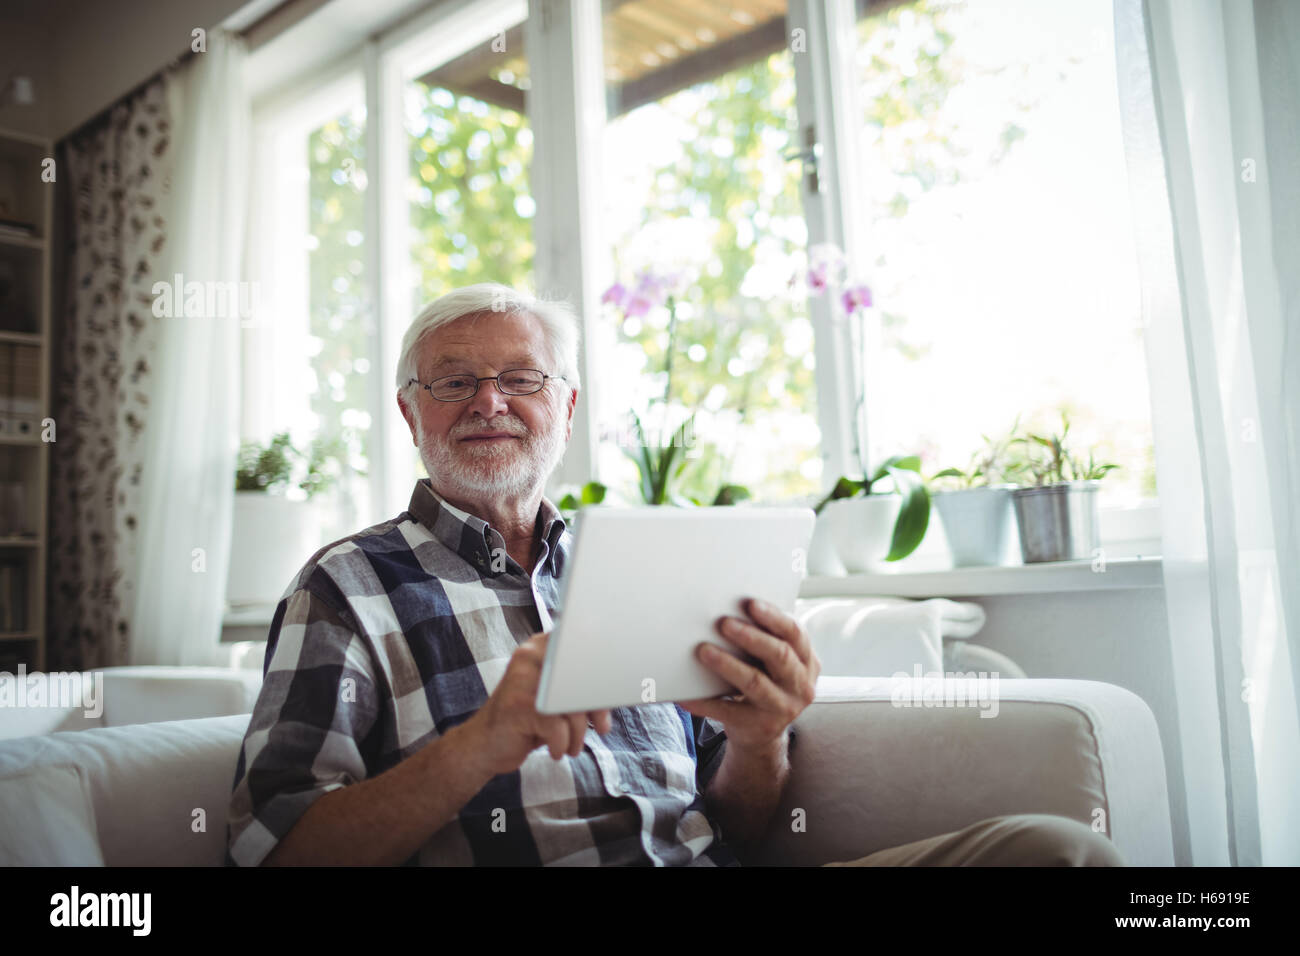 Portrait of senior man using digital tablet Banque D'Images